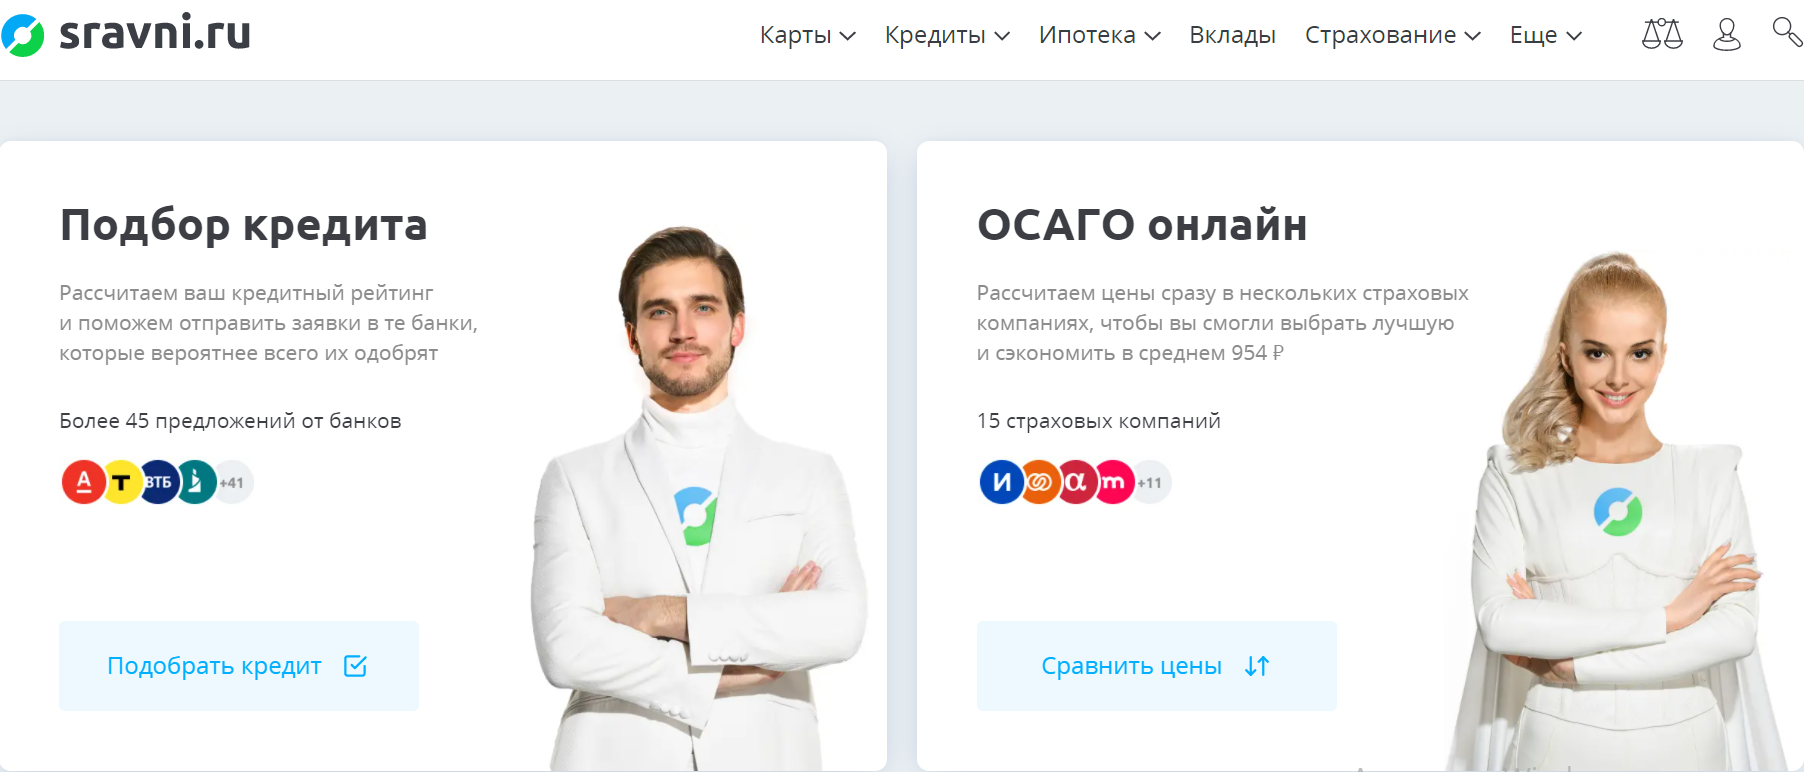 Сервис «Сравни.ру» готовится выйти на IPO